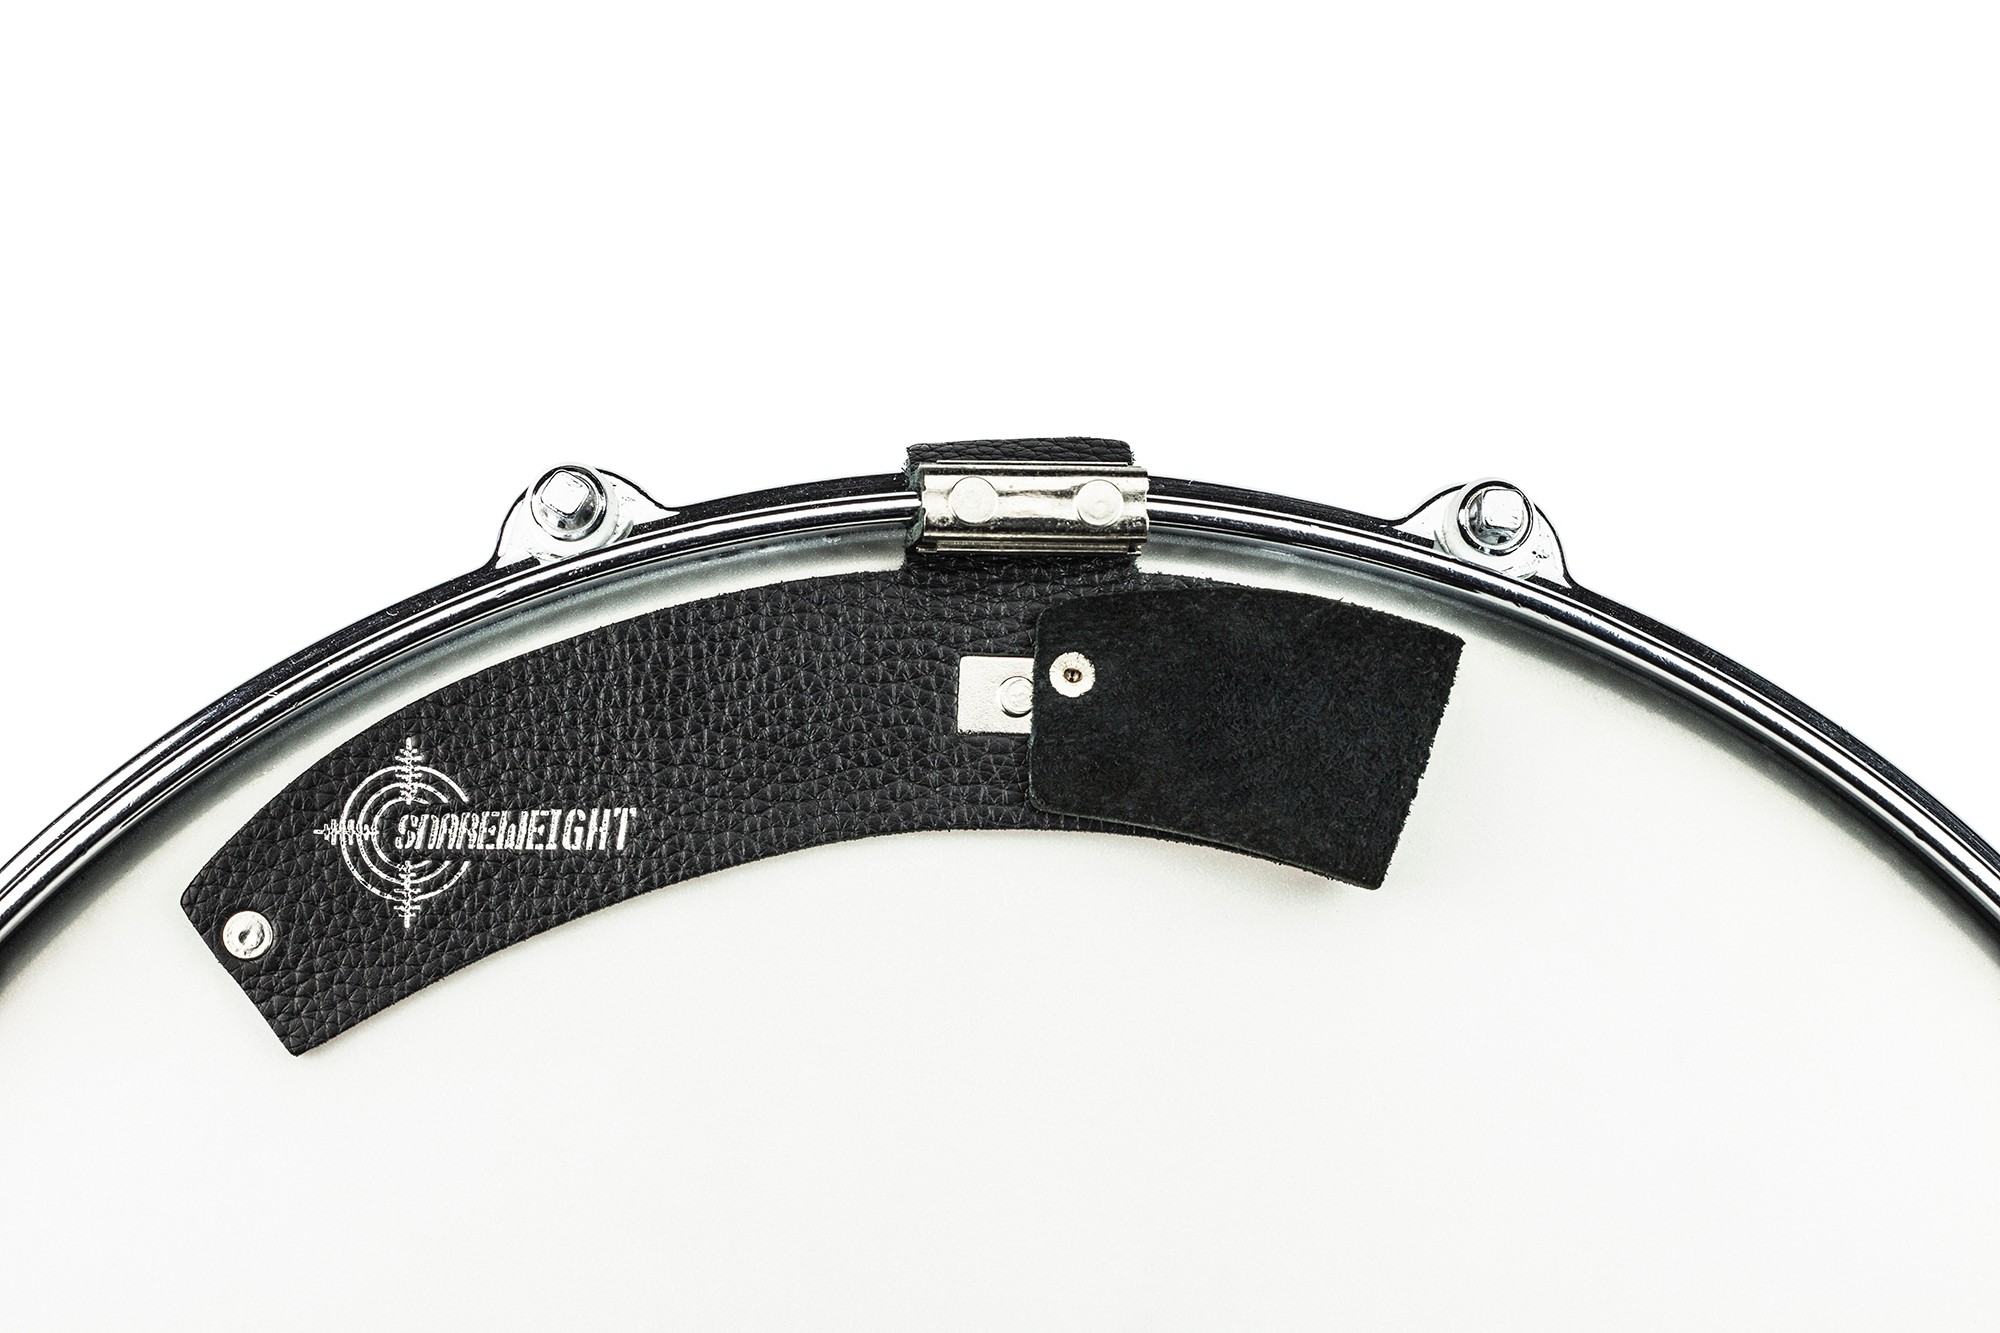 Snareweight M80 Magnetic Drumdämpfer black Leder